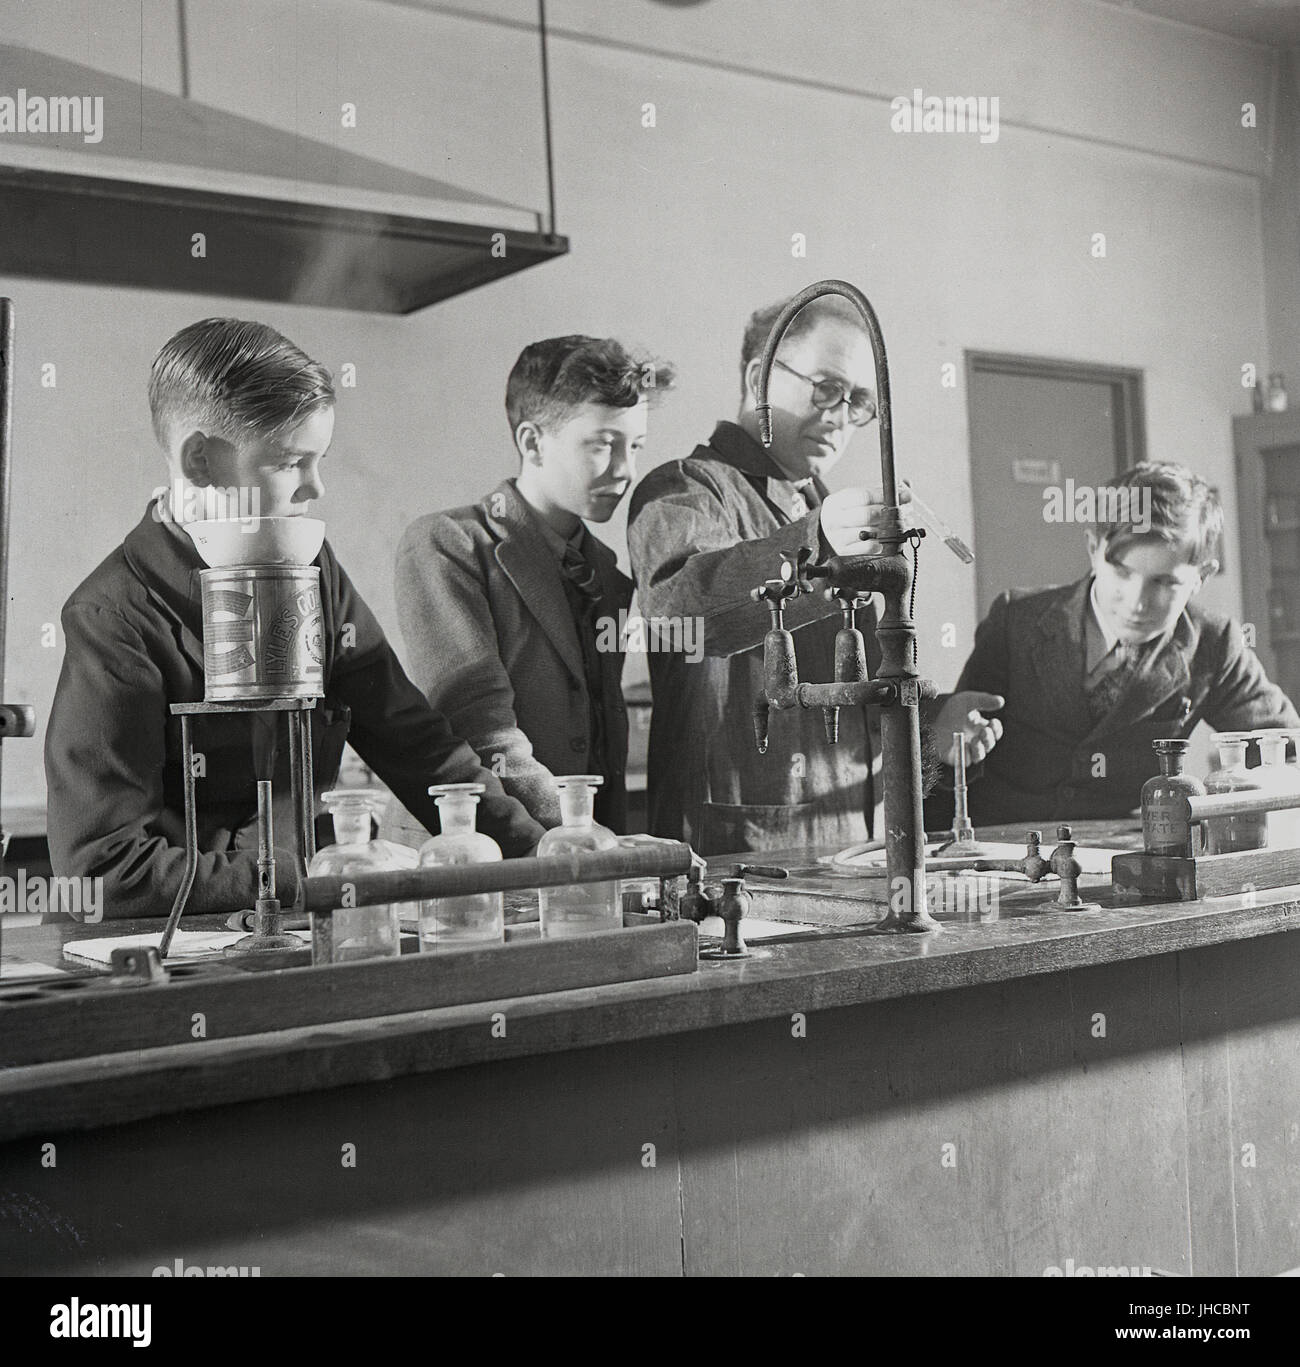 1950, historische, England, UK, Science Lab der South West Essex Technische Hochschule - Wissen lokal als "Universität". Bild zeigt einen männlichen Lehrer mit einem testube, um zu demonstrieren, wie verschiedene Chemikalien reagieren wenn sie vermischt. Stockfoto